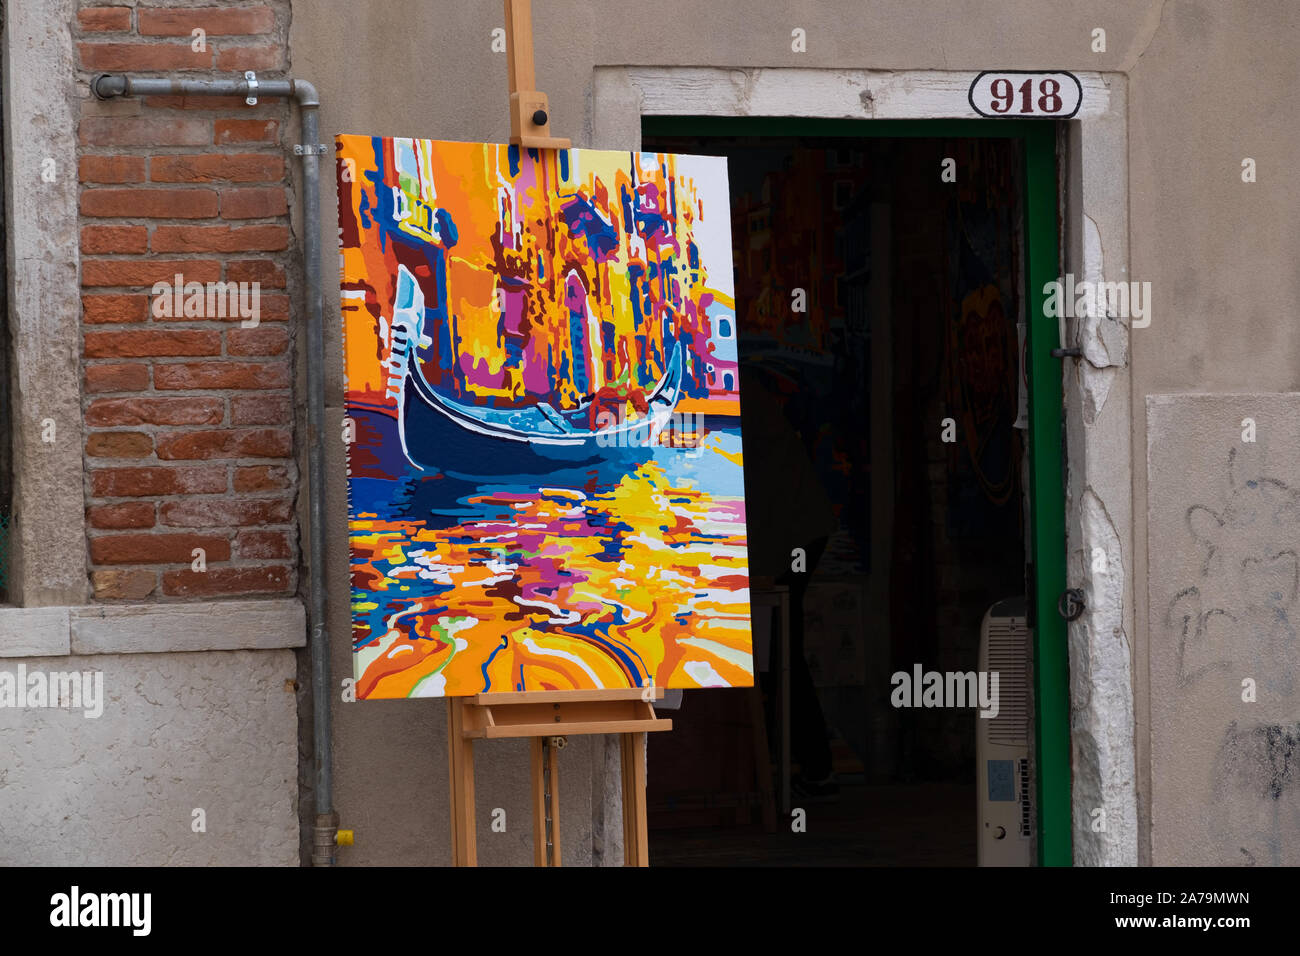 Peinture à l'huile originale peinte de façon percutante en jaune, orange et bleu d'une gondole sur un canal affiché sur un chevalet dans la rue pour annoncer une galerie Banque D'Images